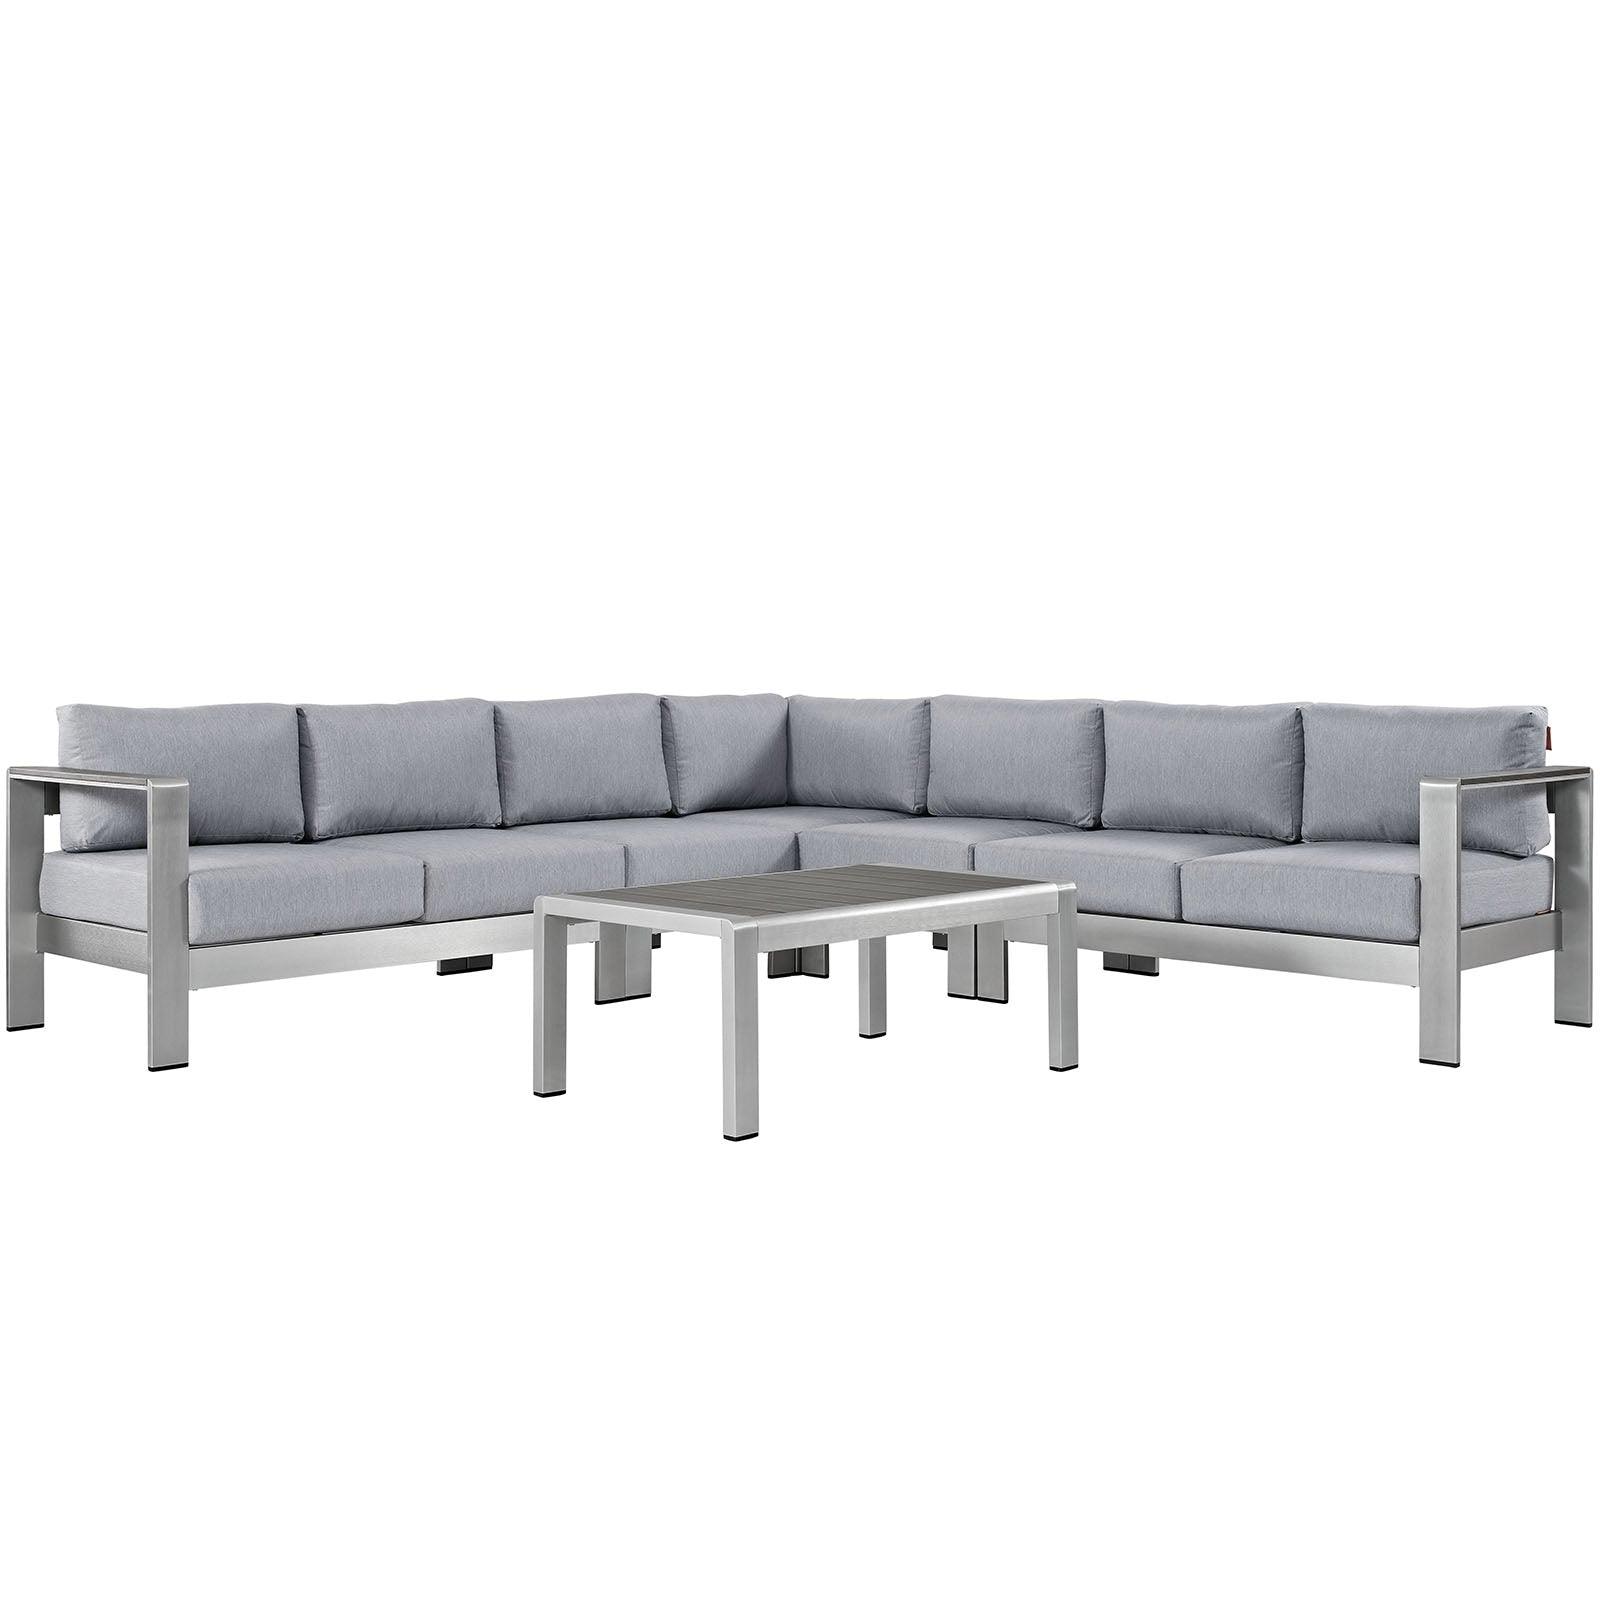 Modway Shore 6 Piece Outdoor Patio Aluminum Sectional Sofa Set, EEI-2561 FredCo